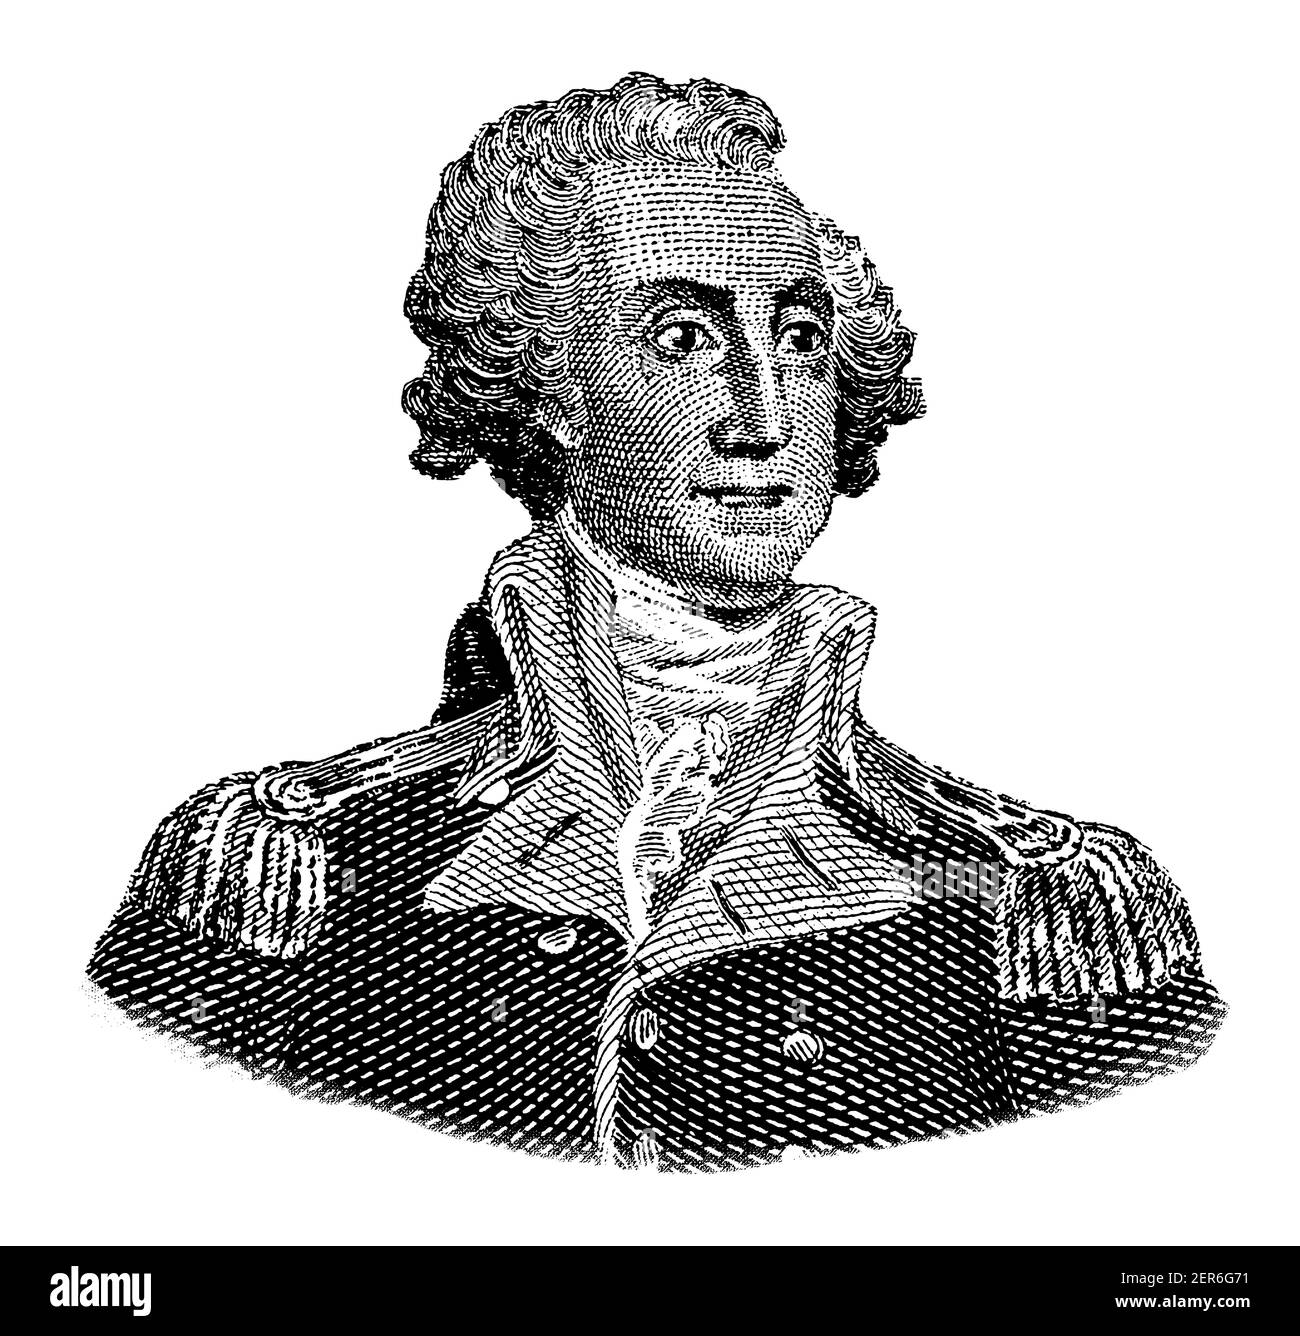 Halblanges Porträt von George Washington, dem ersten Präsidenten der Vereinigten Staaten von Amerika, der von 1789 bis 1797 diente und allgemein als angesehen wurde Stockfoto